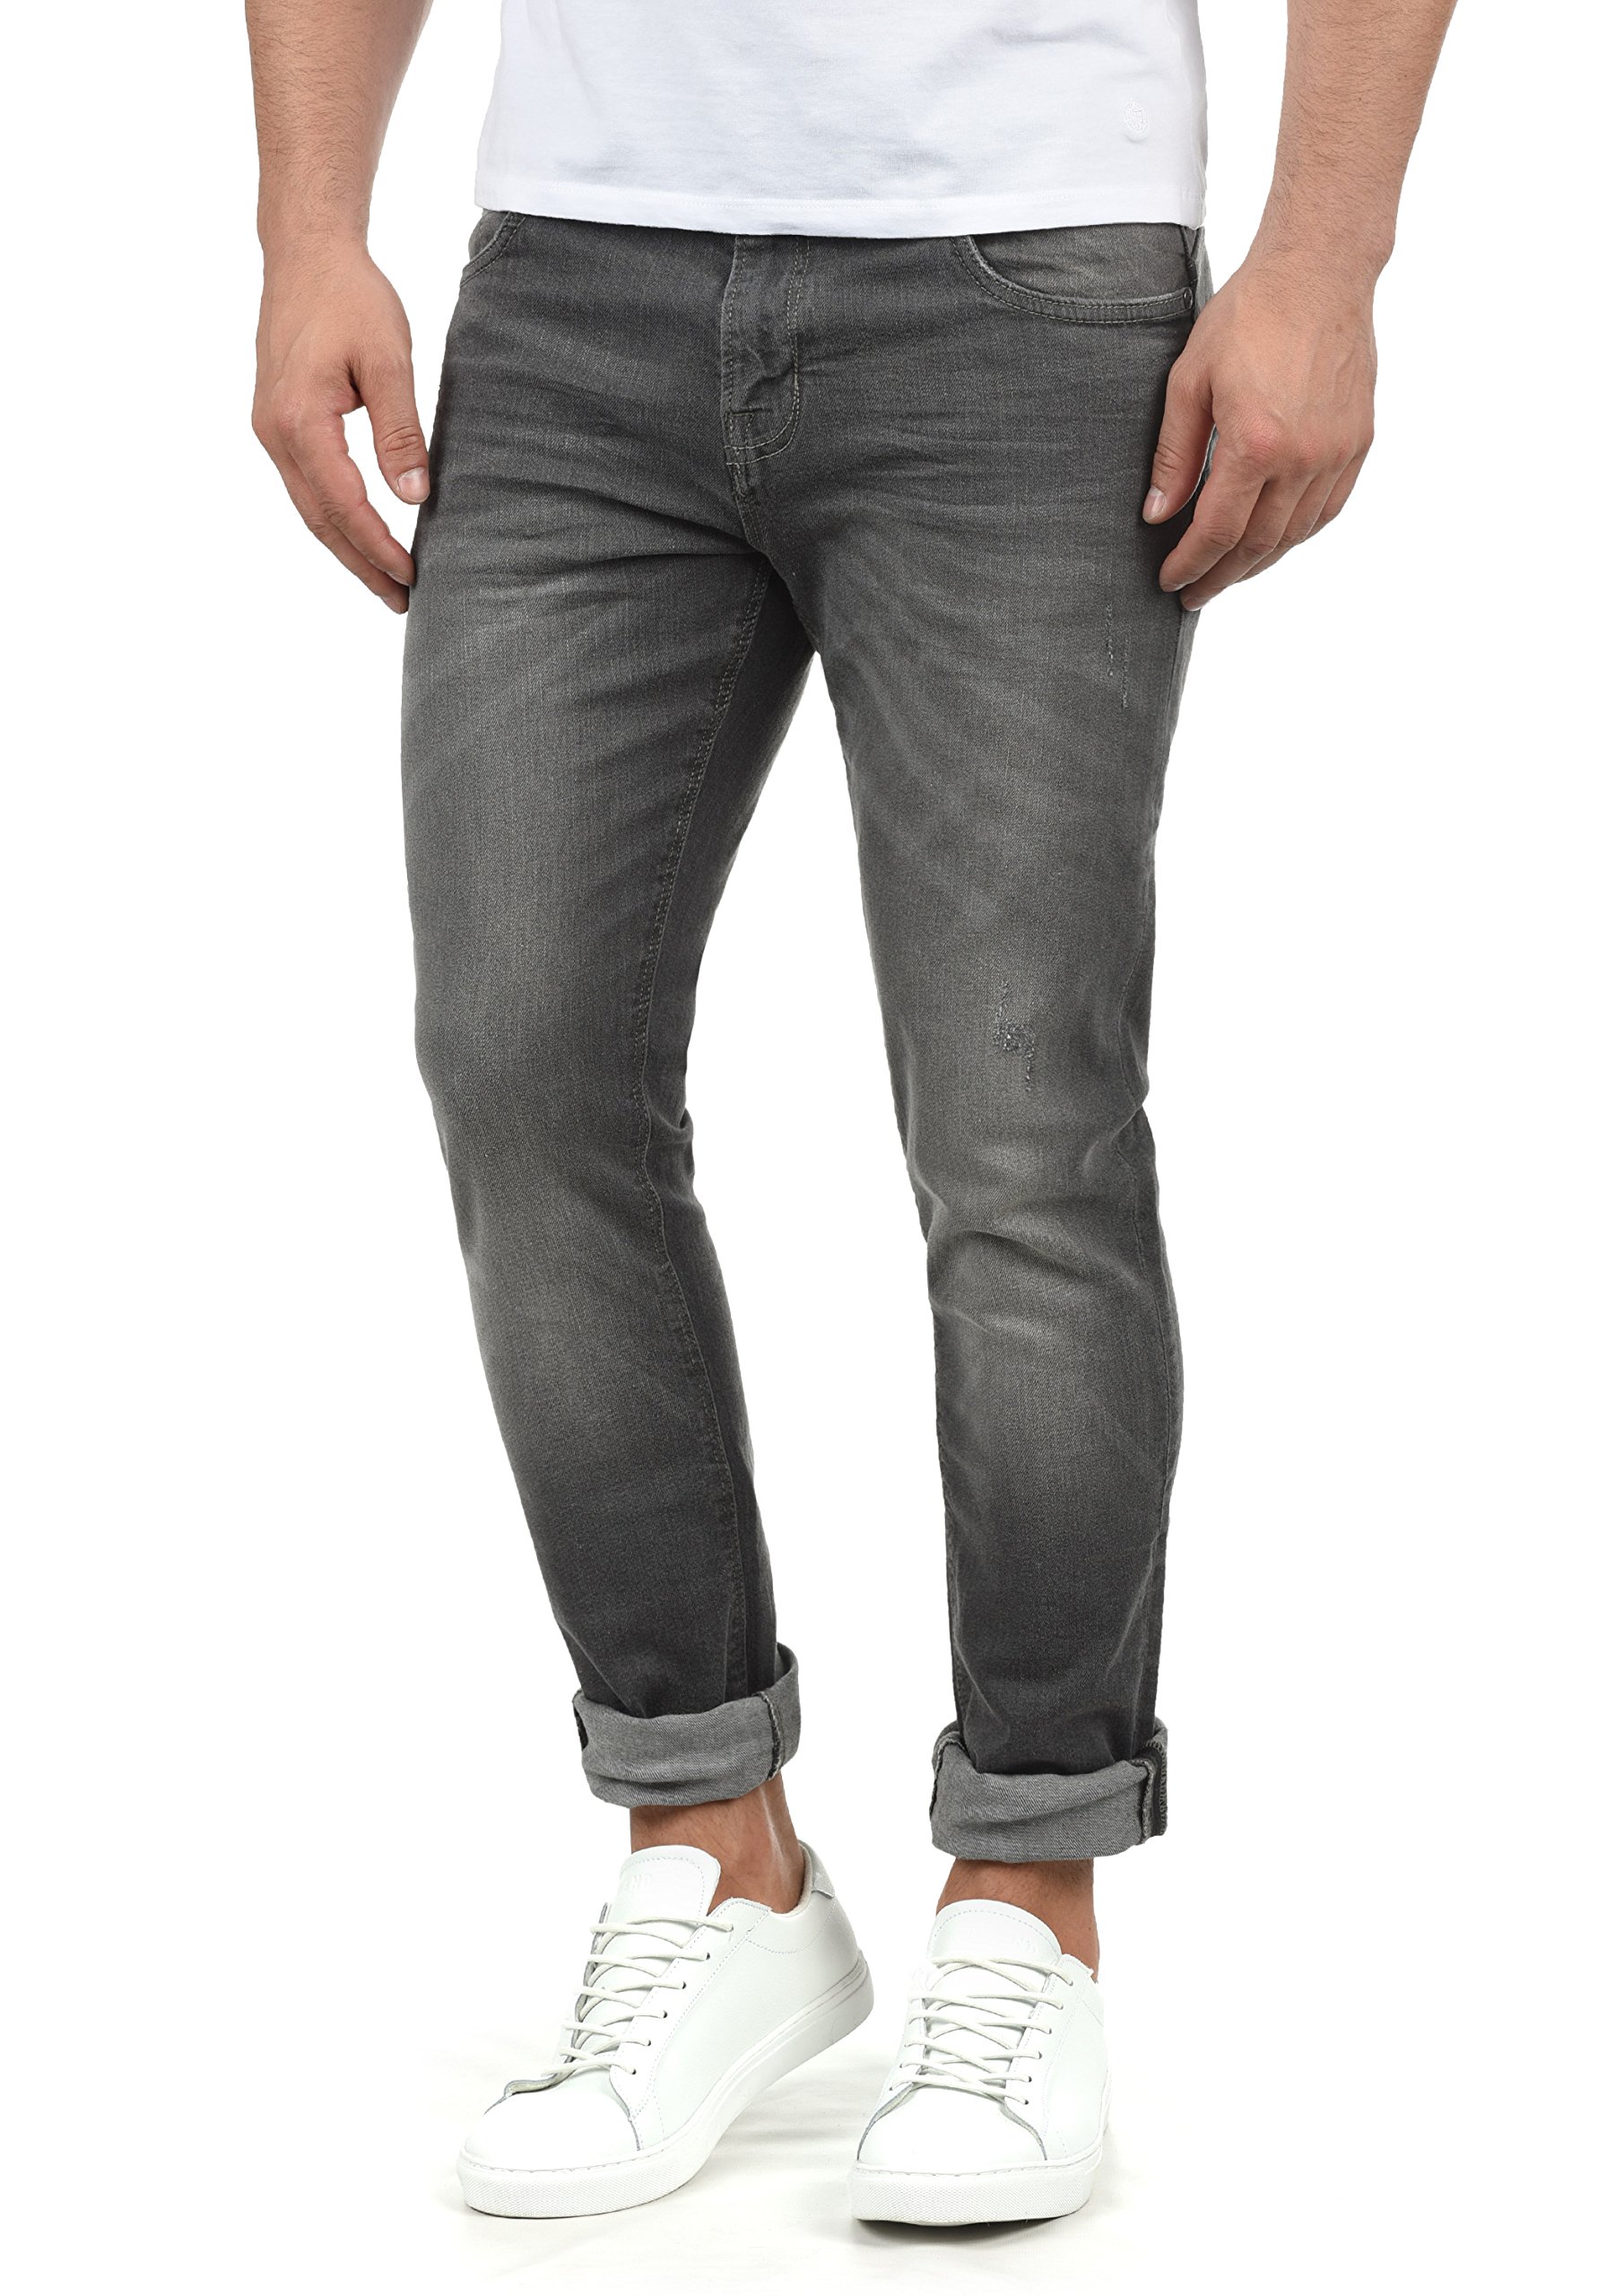 Indicode IDAldersgate Herren Jeans Hose Denim mit Stretch und Destroyed-Look Slim Fit, Größe:33/34, Farbe:Light Grey (901)